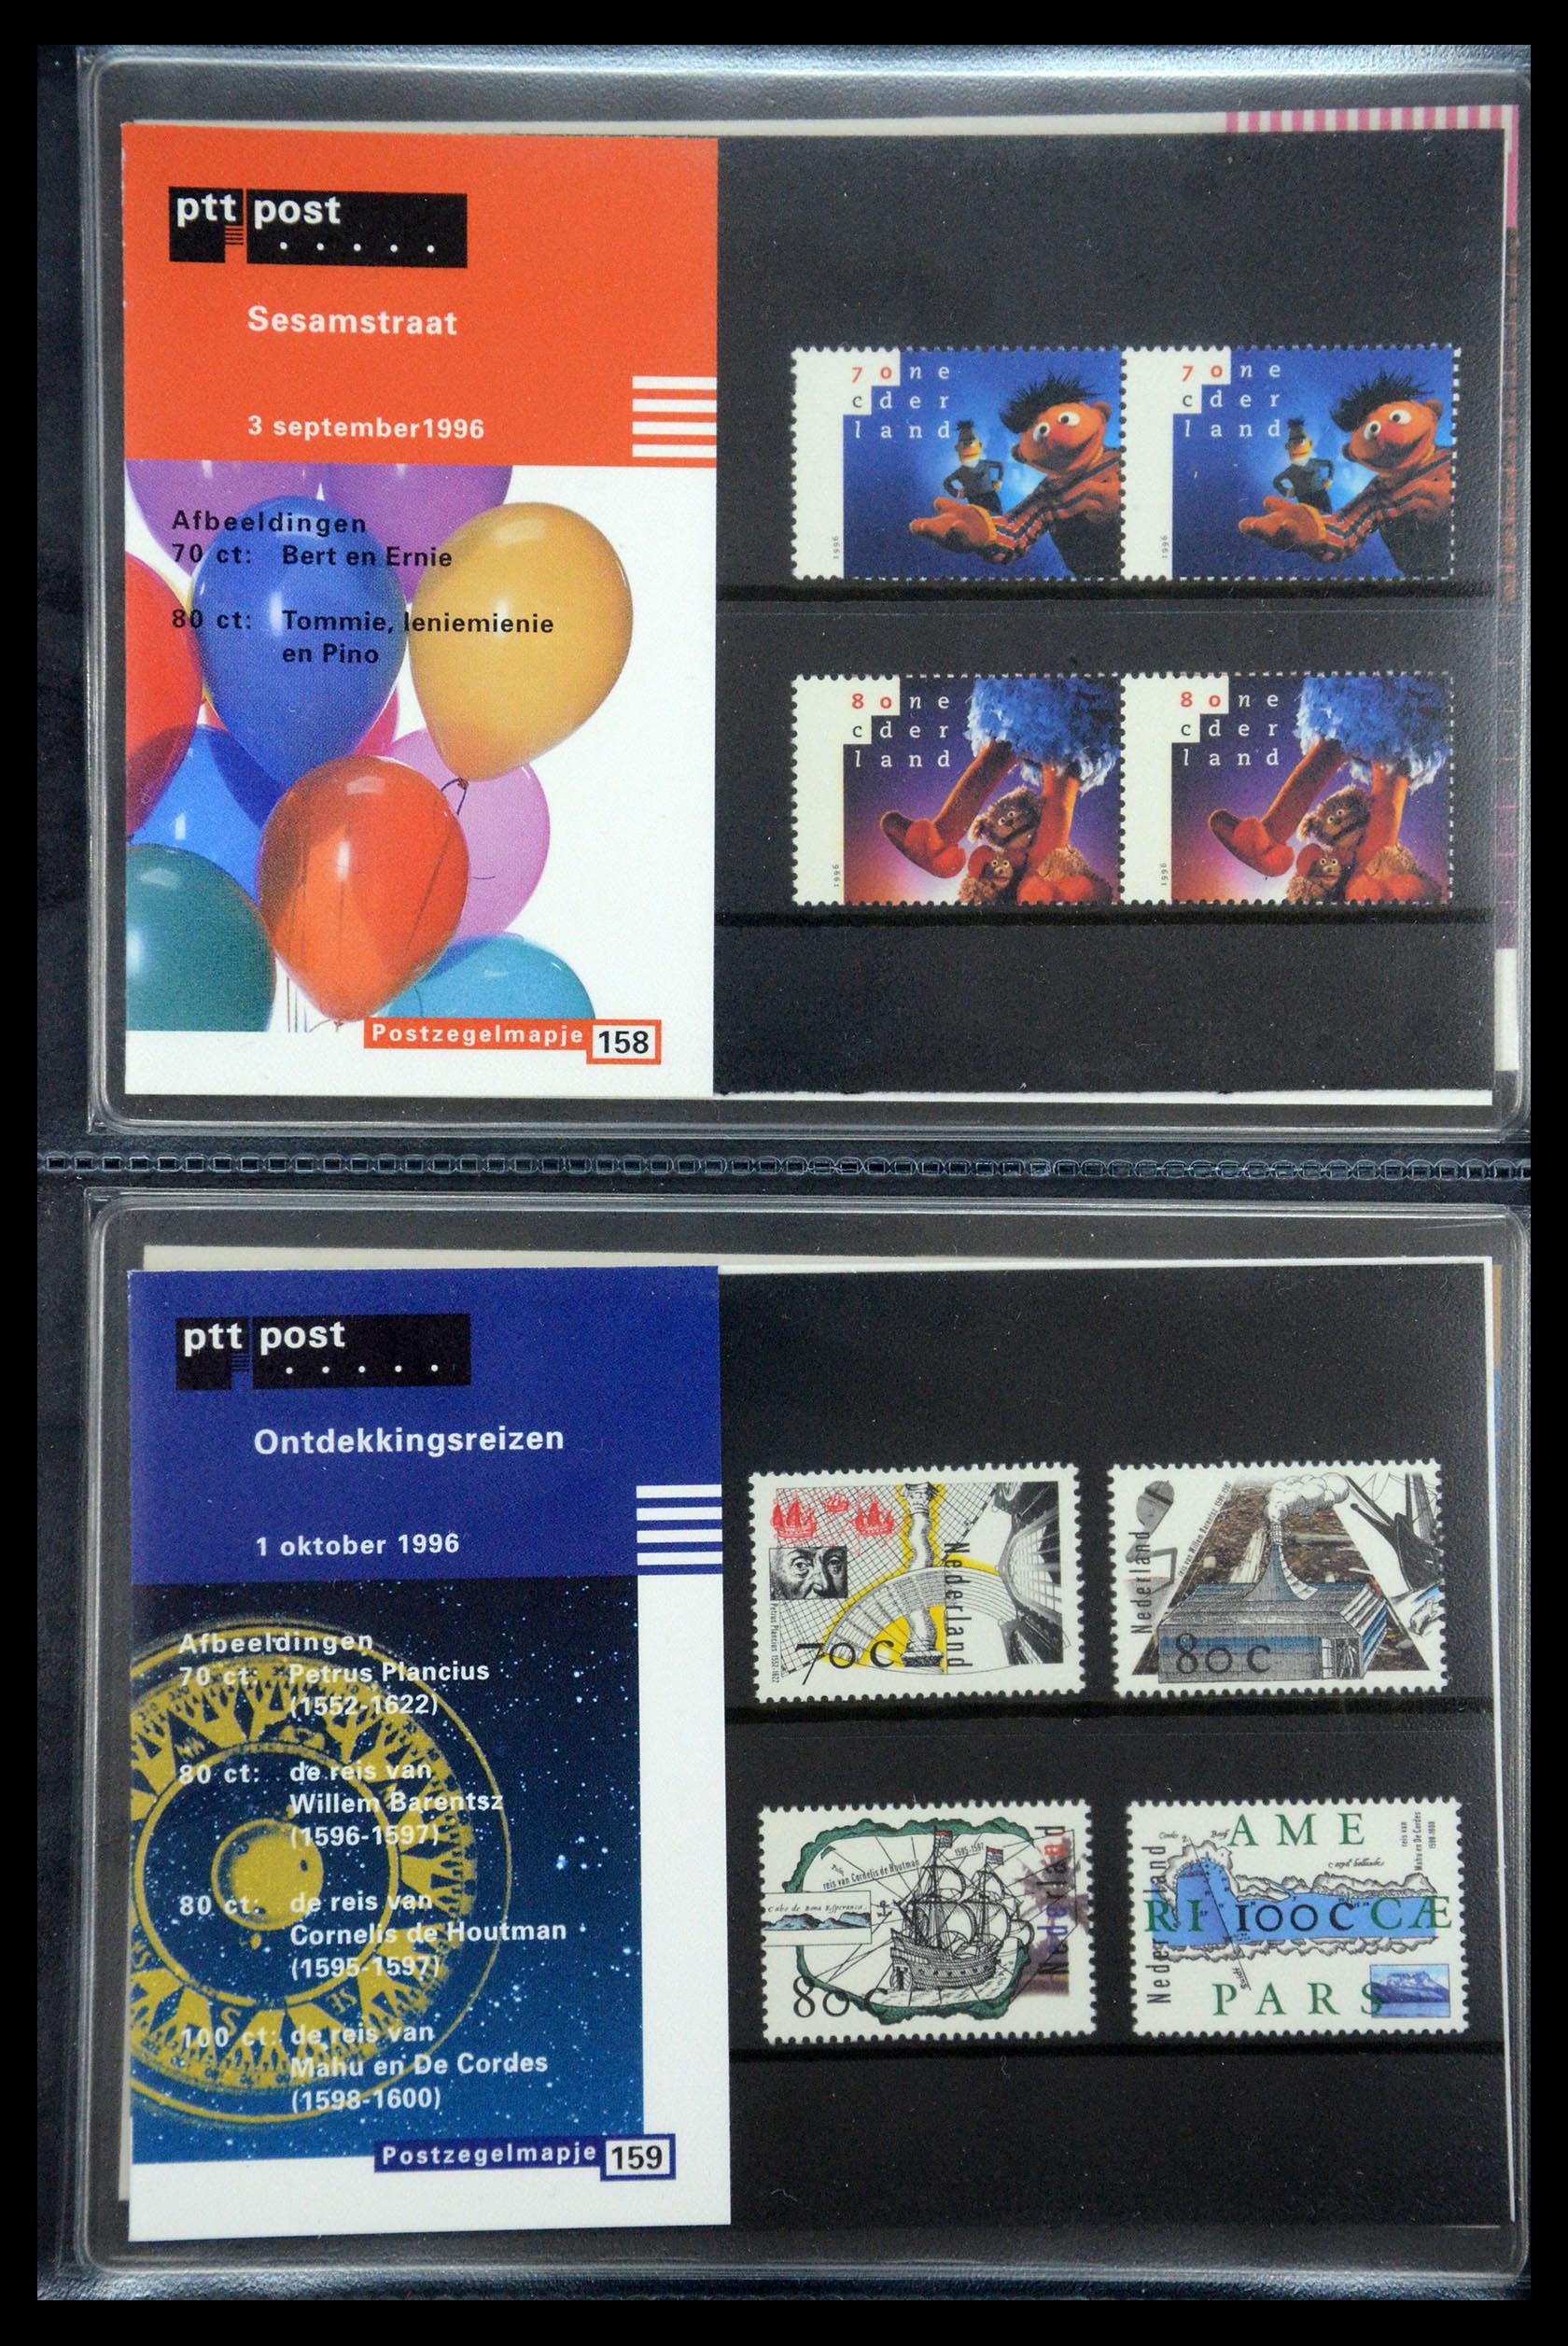 35187 081 - Stamp Collection 35187 Netherlands PTT presentation packs 1982-2019!